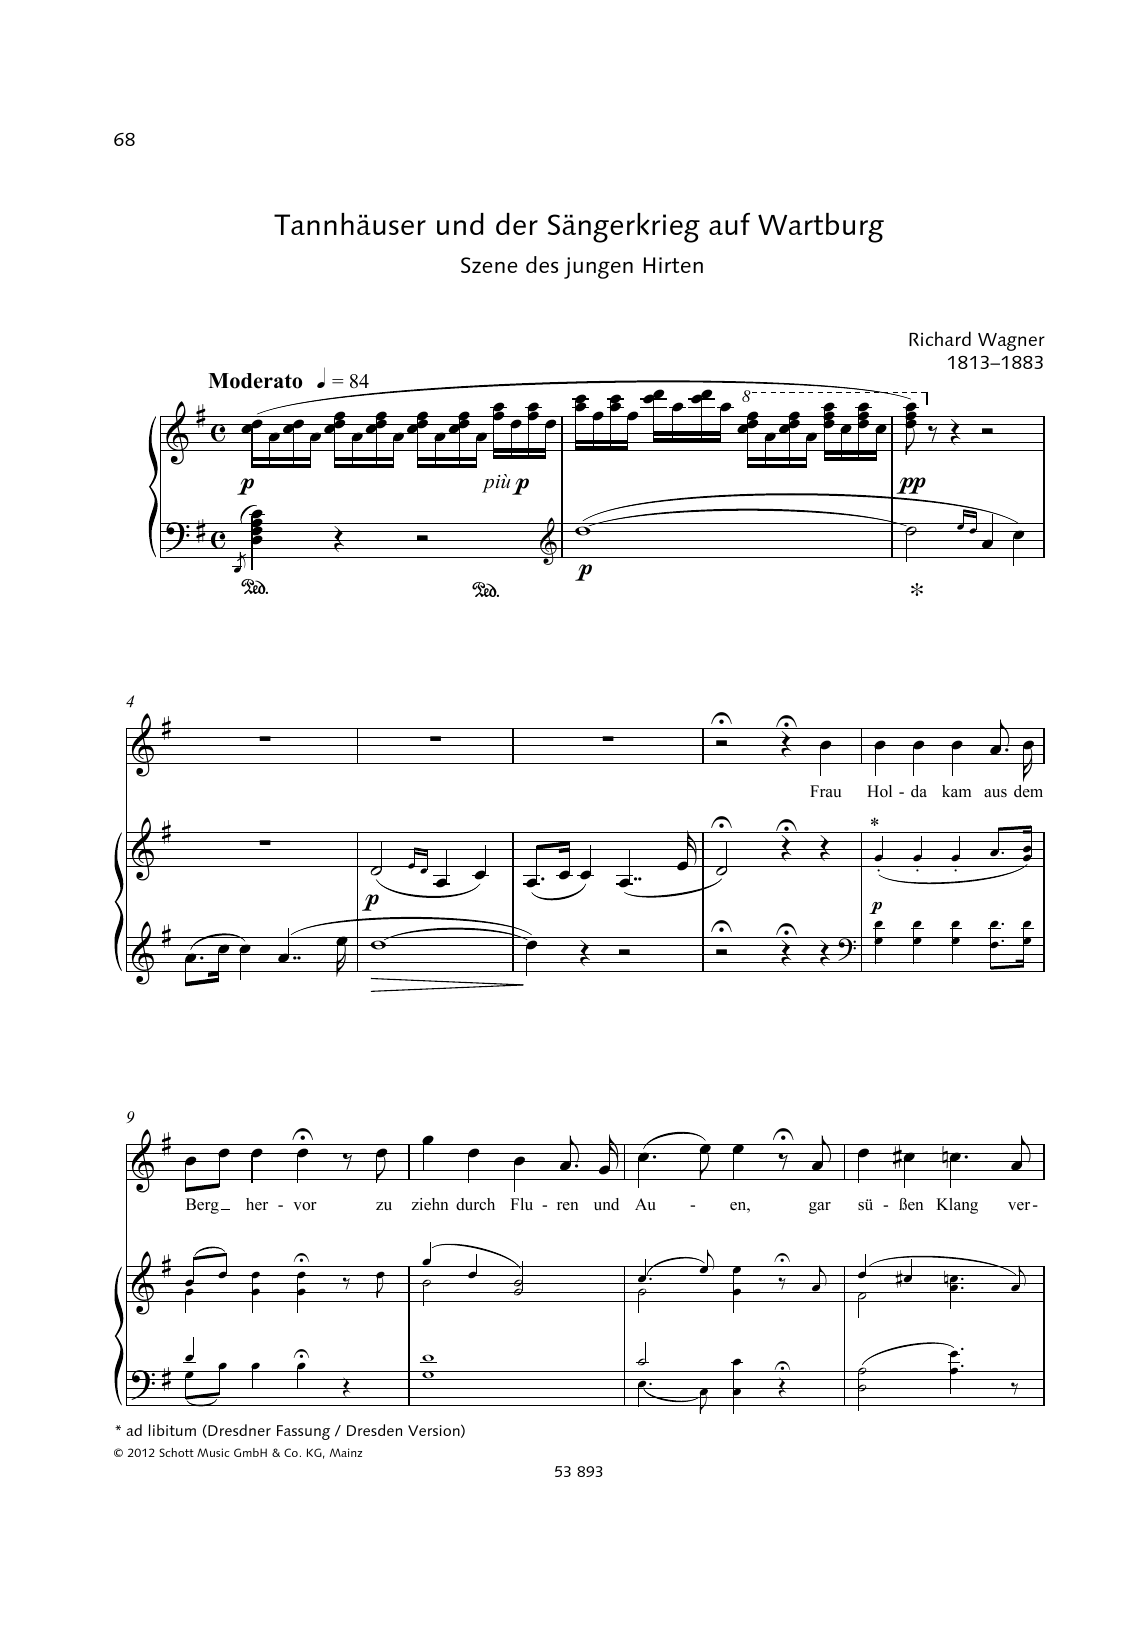 Richard Wagner Frau Holda kam aus dem Berg hervor sheet music notes and chords arranged for Piano & Vocal